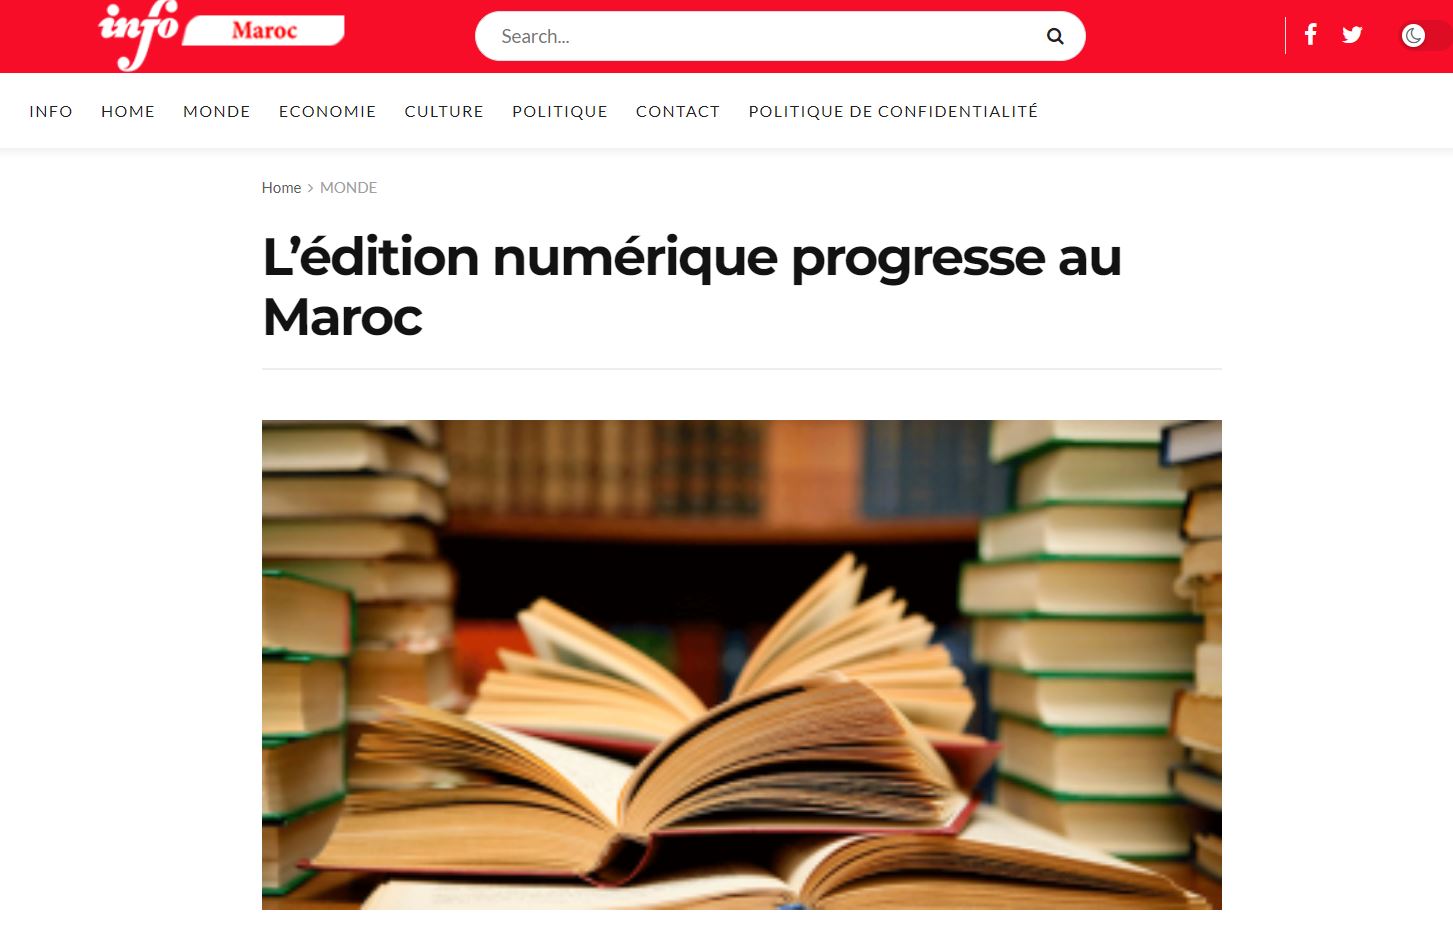 INFO MAROC | L’édition numérique progresse au Maroc